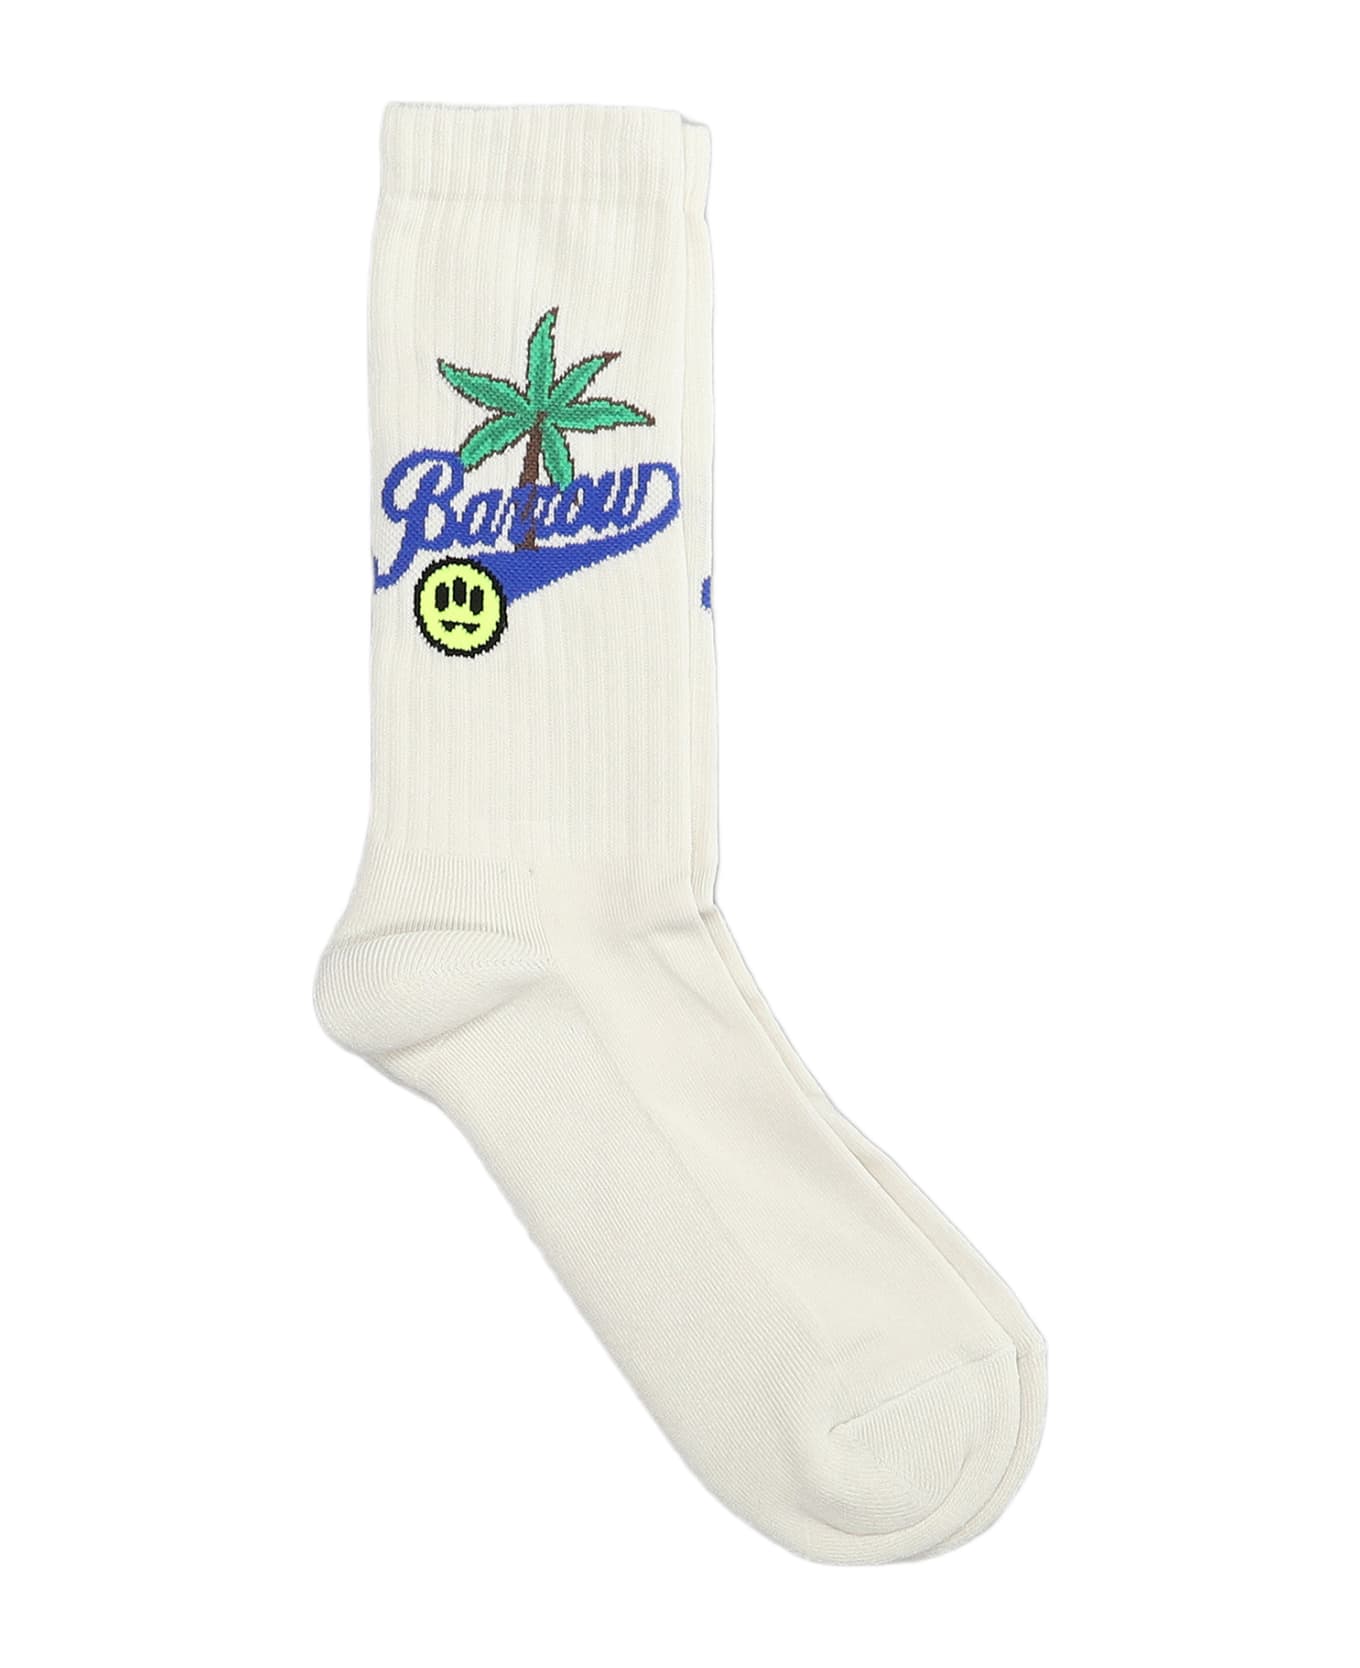 Barrow Socks In Beige Cotton - beige 靴下